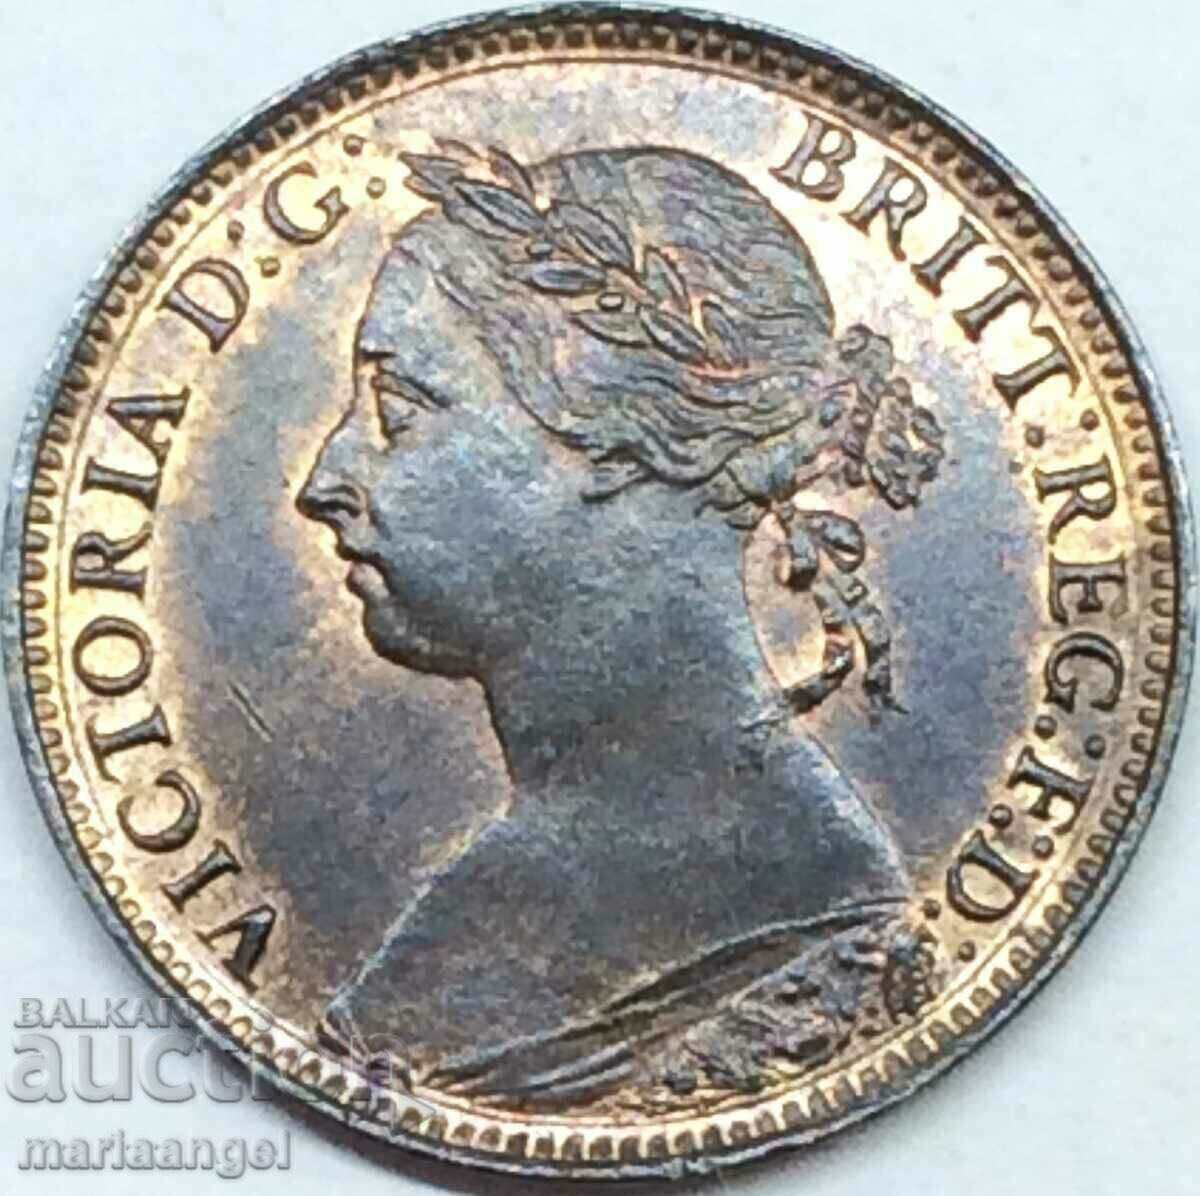 Great Britain 1/2 Penny 1886 Victoria Bronze